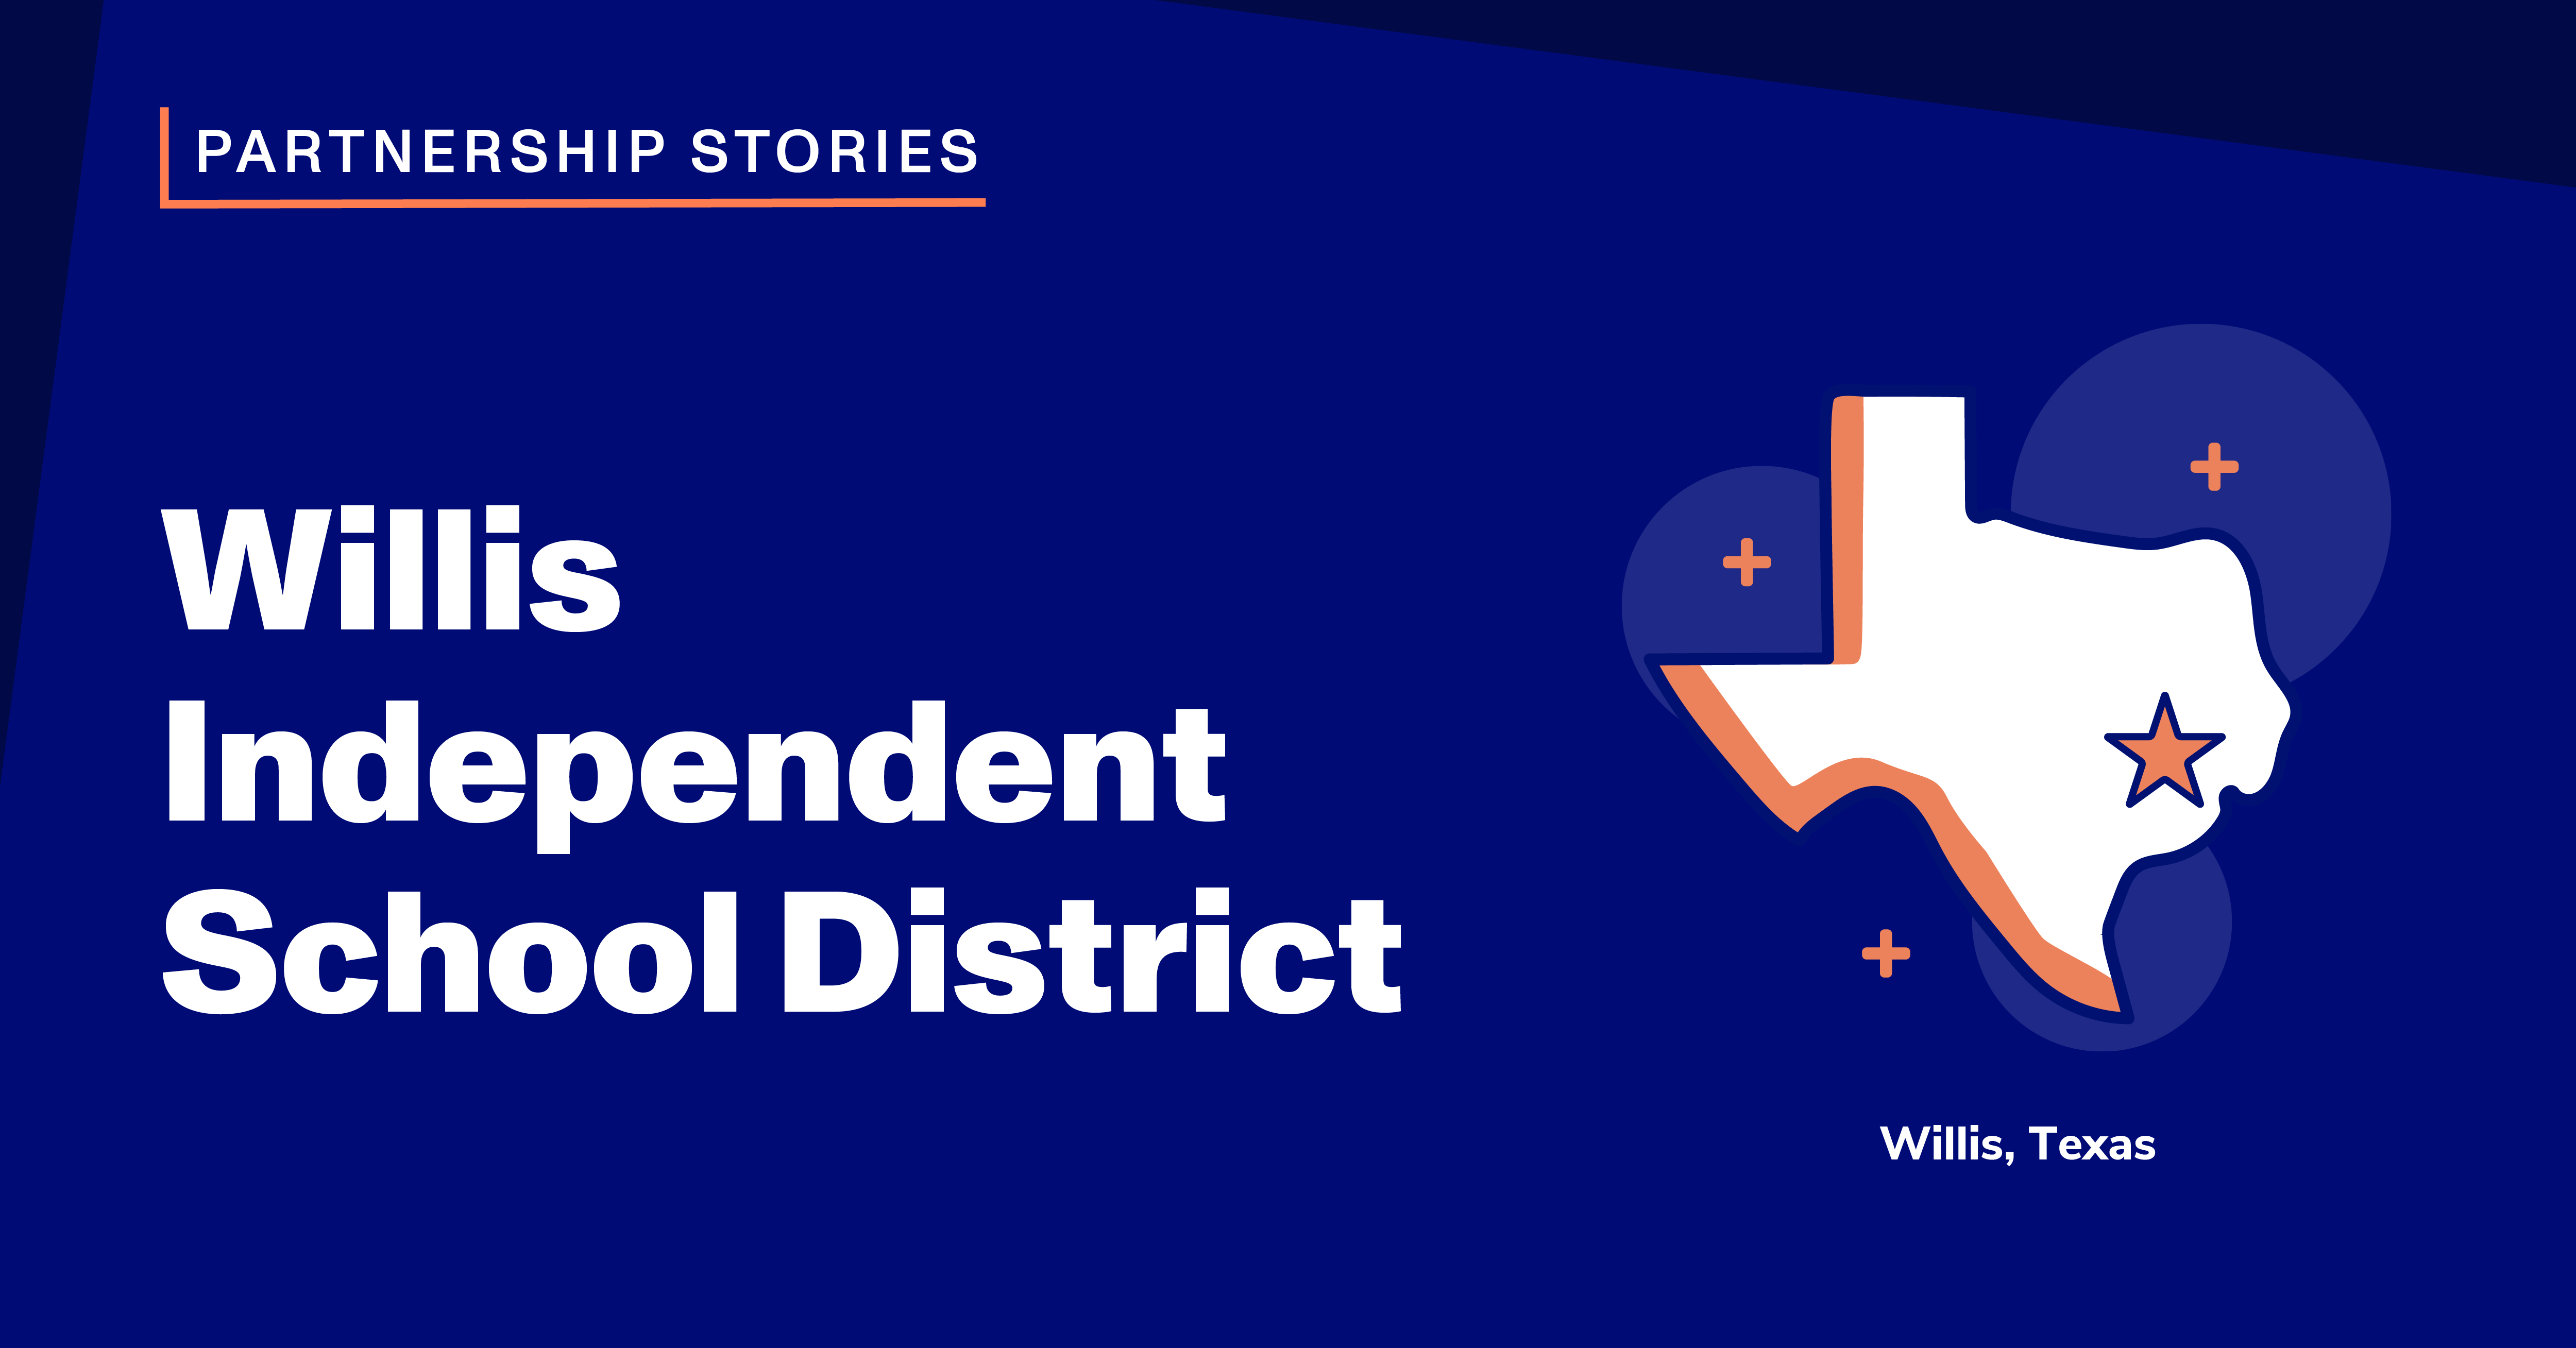 Willis Independent School District: Willis, Texas